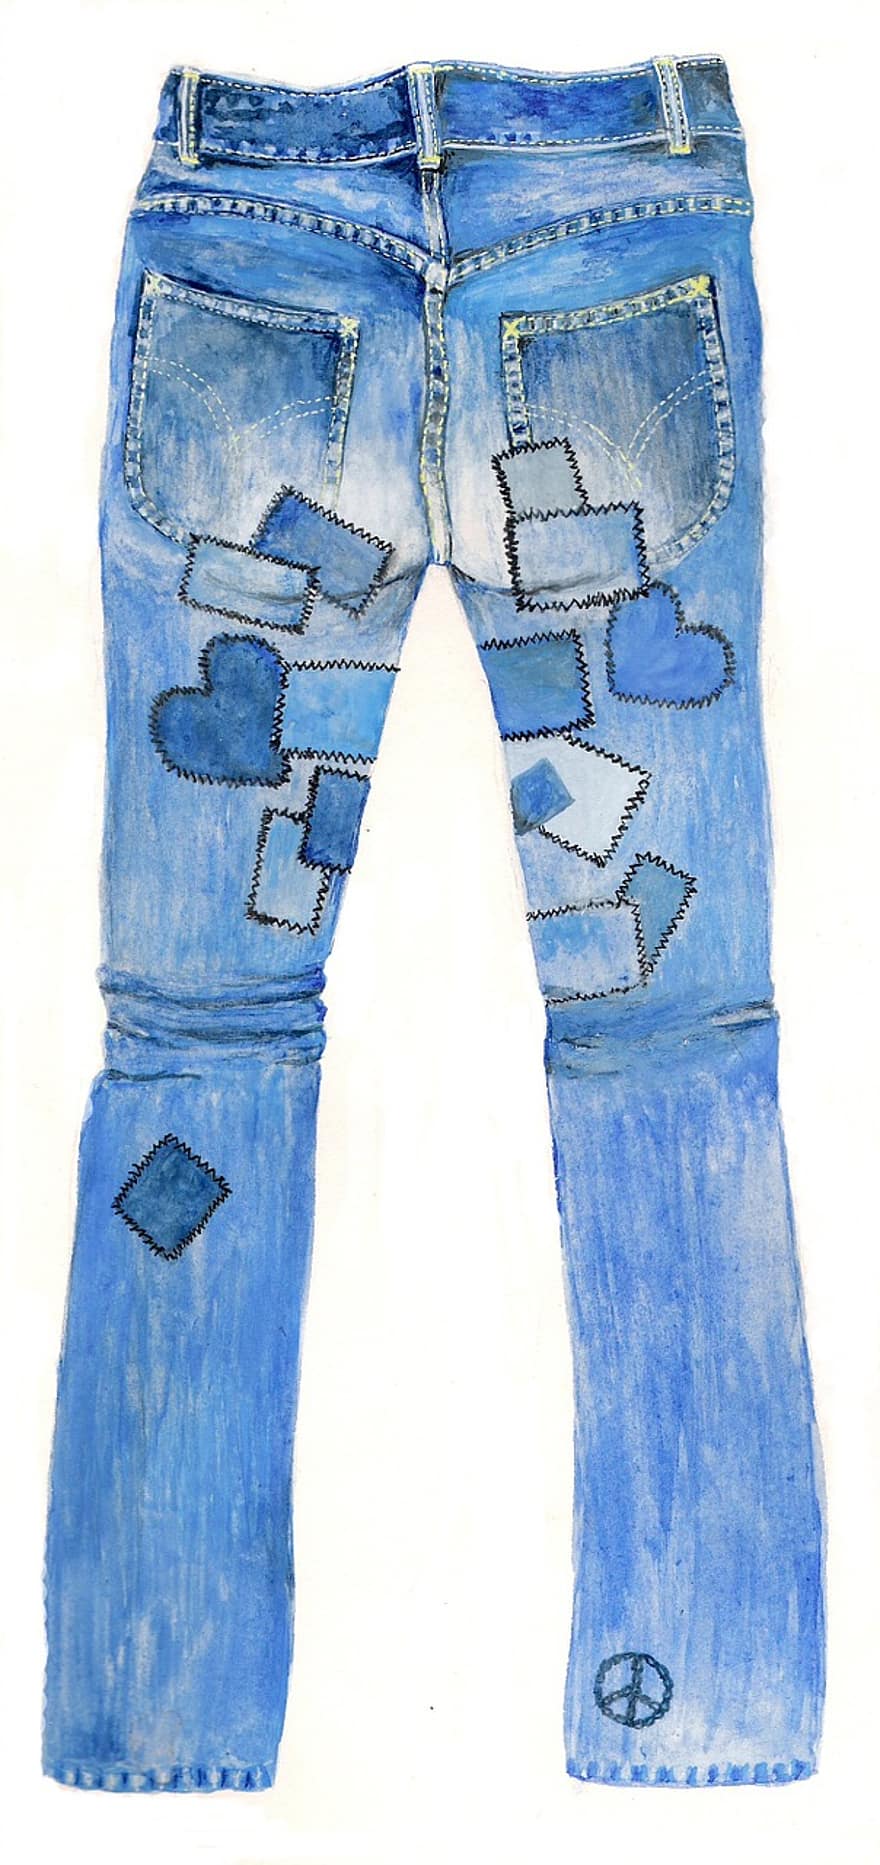 Jeans, Pants, Blue Jeans